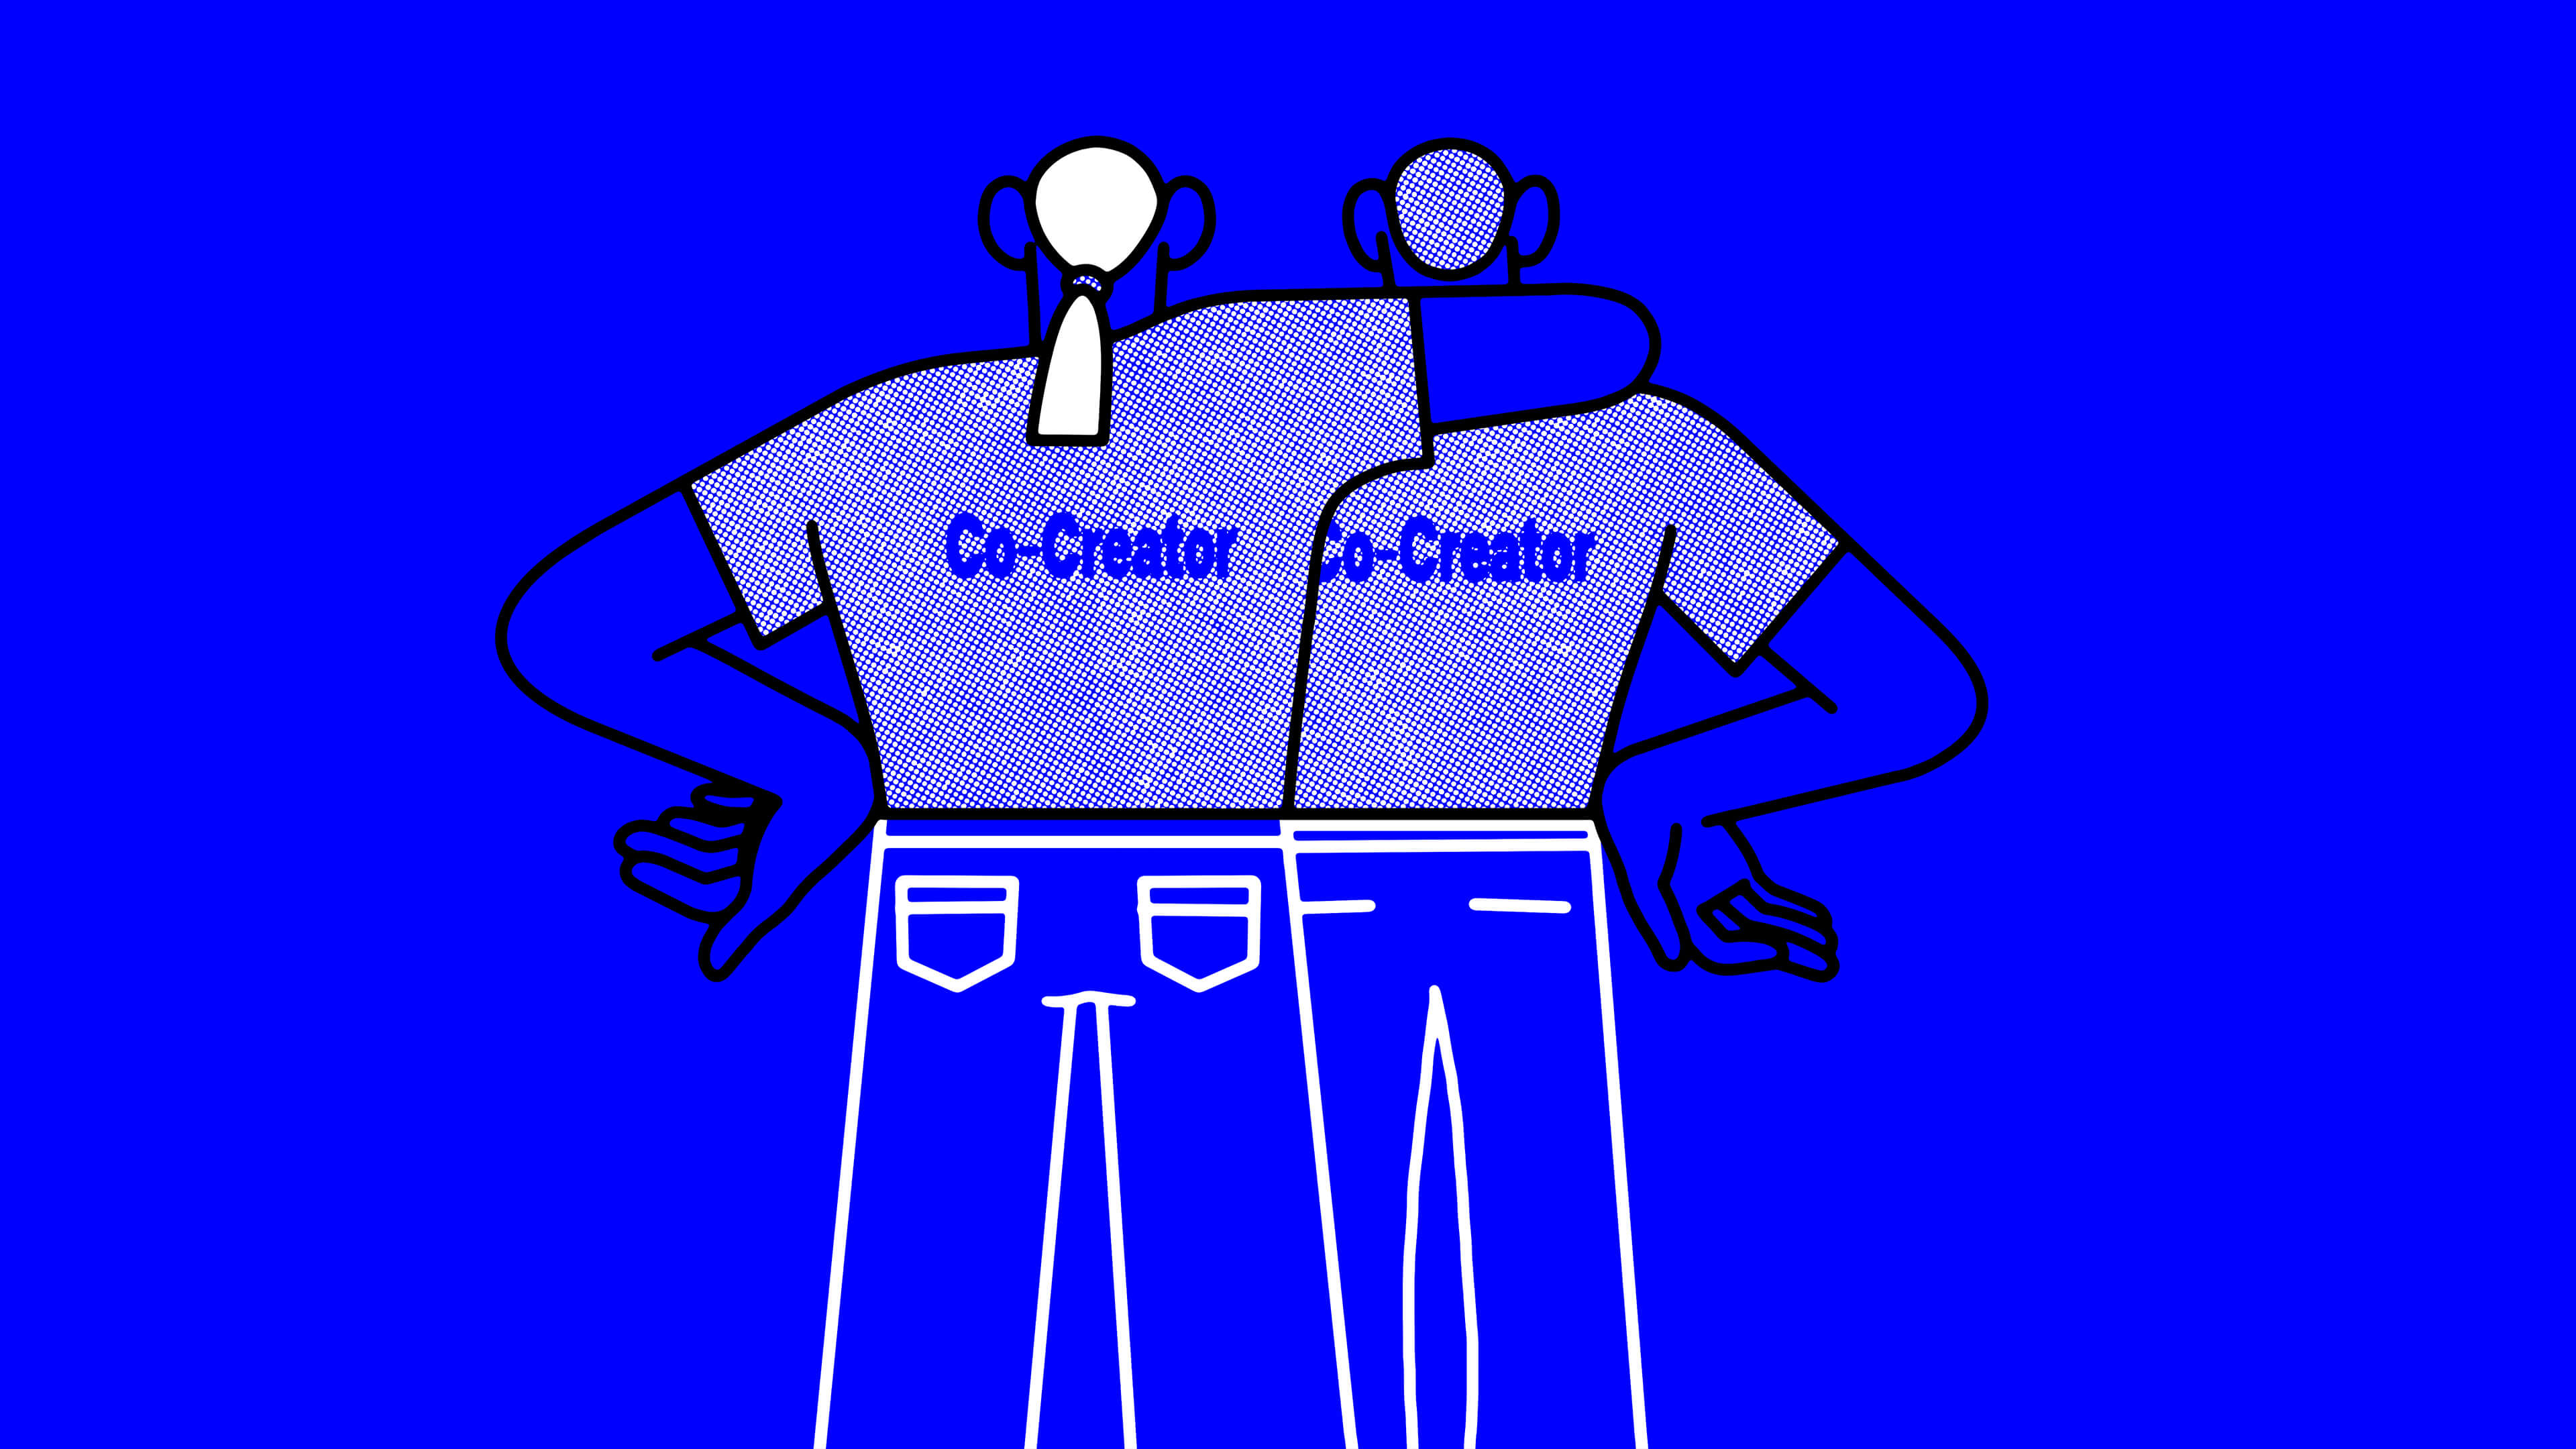 Eine Illustration auf blauen Hintergrund, die das Prinzip der CO-CREATION symbolisiert.